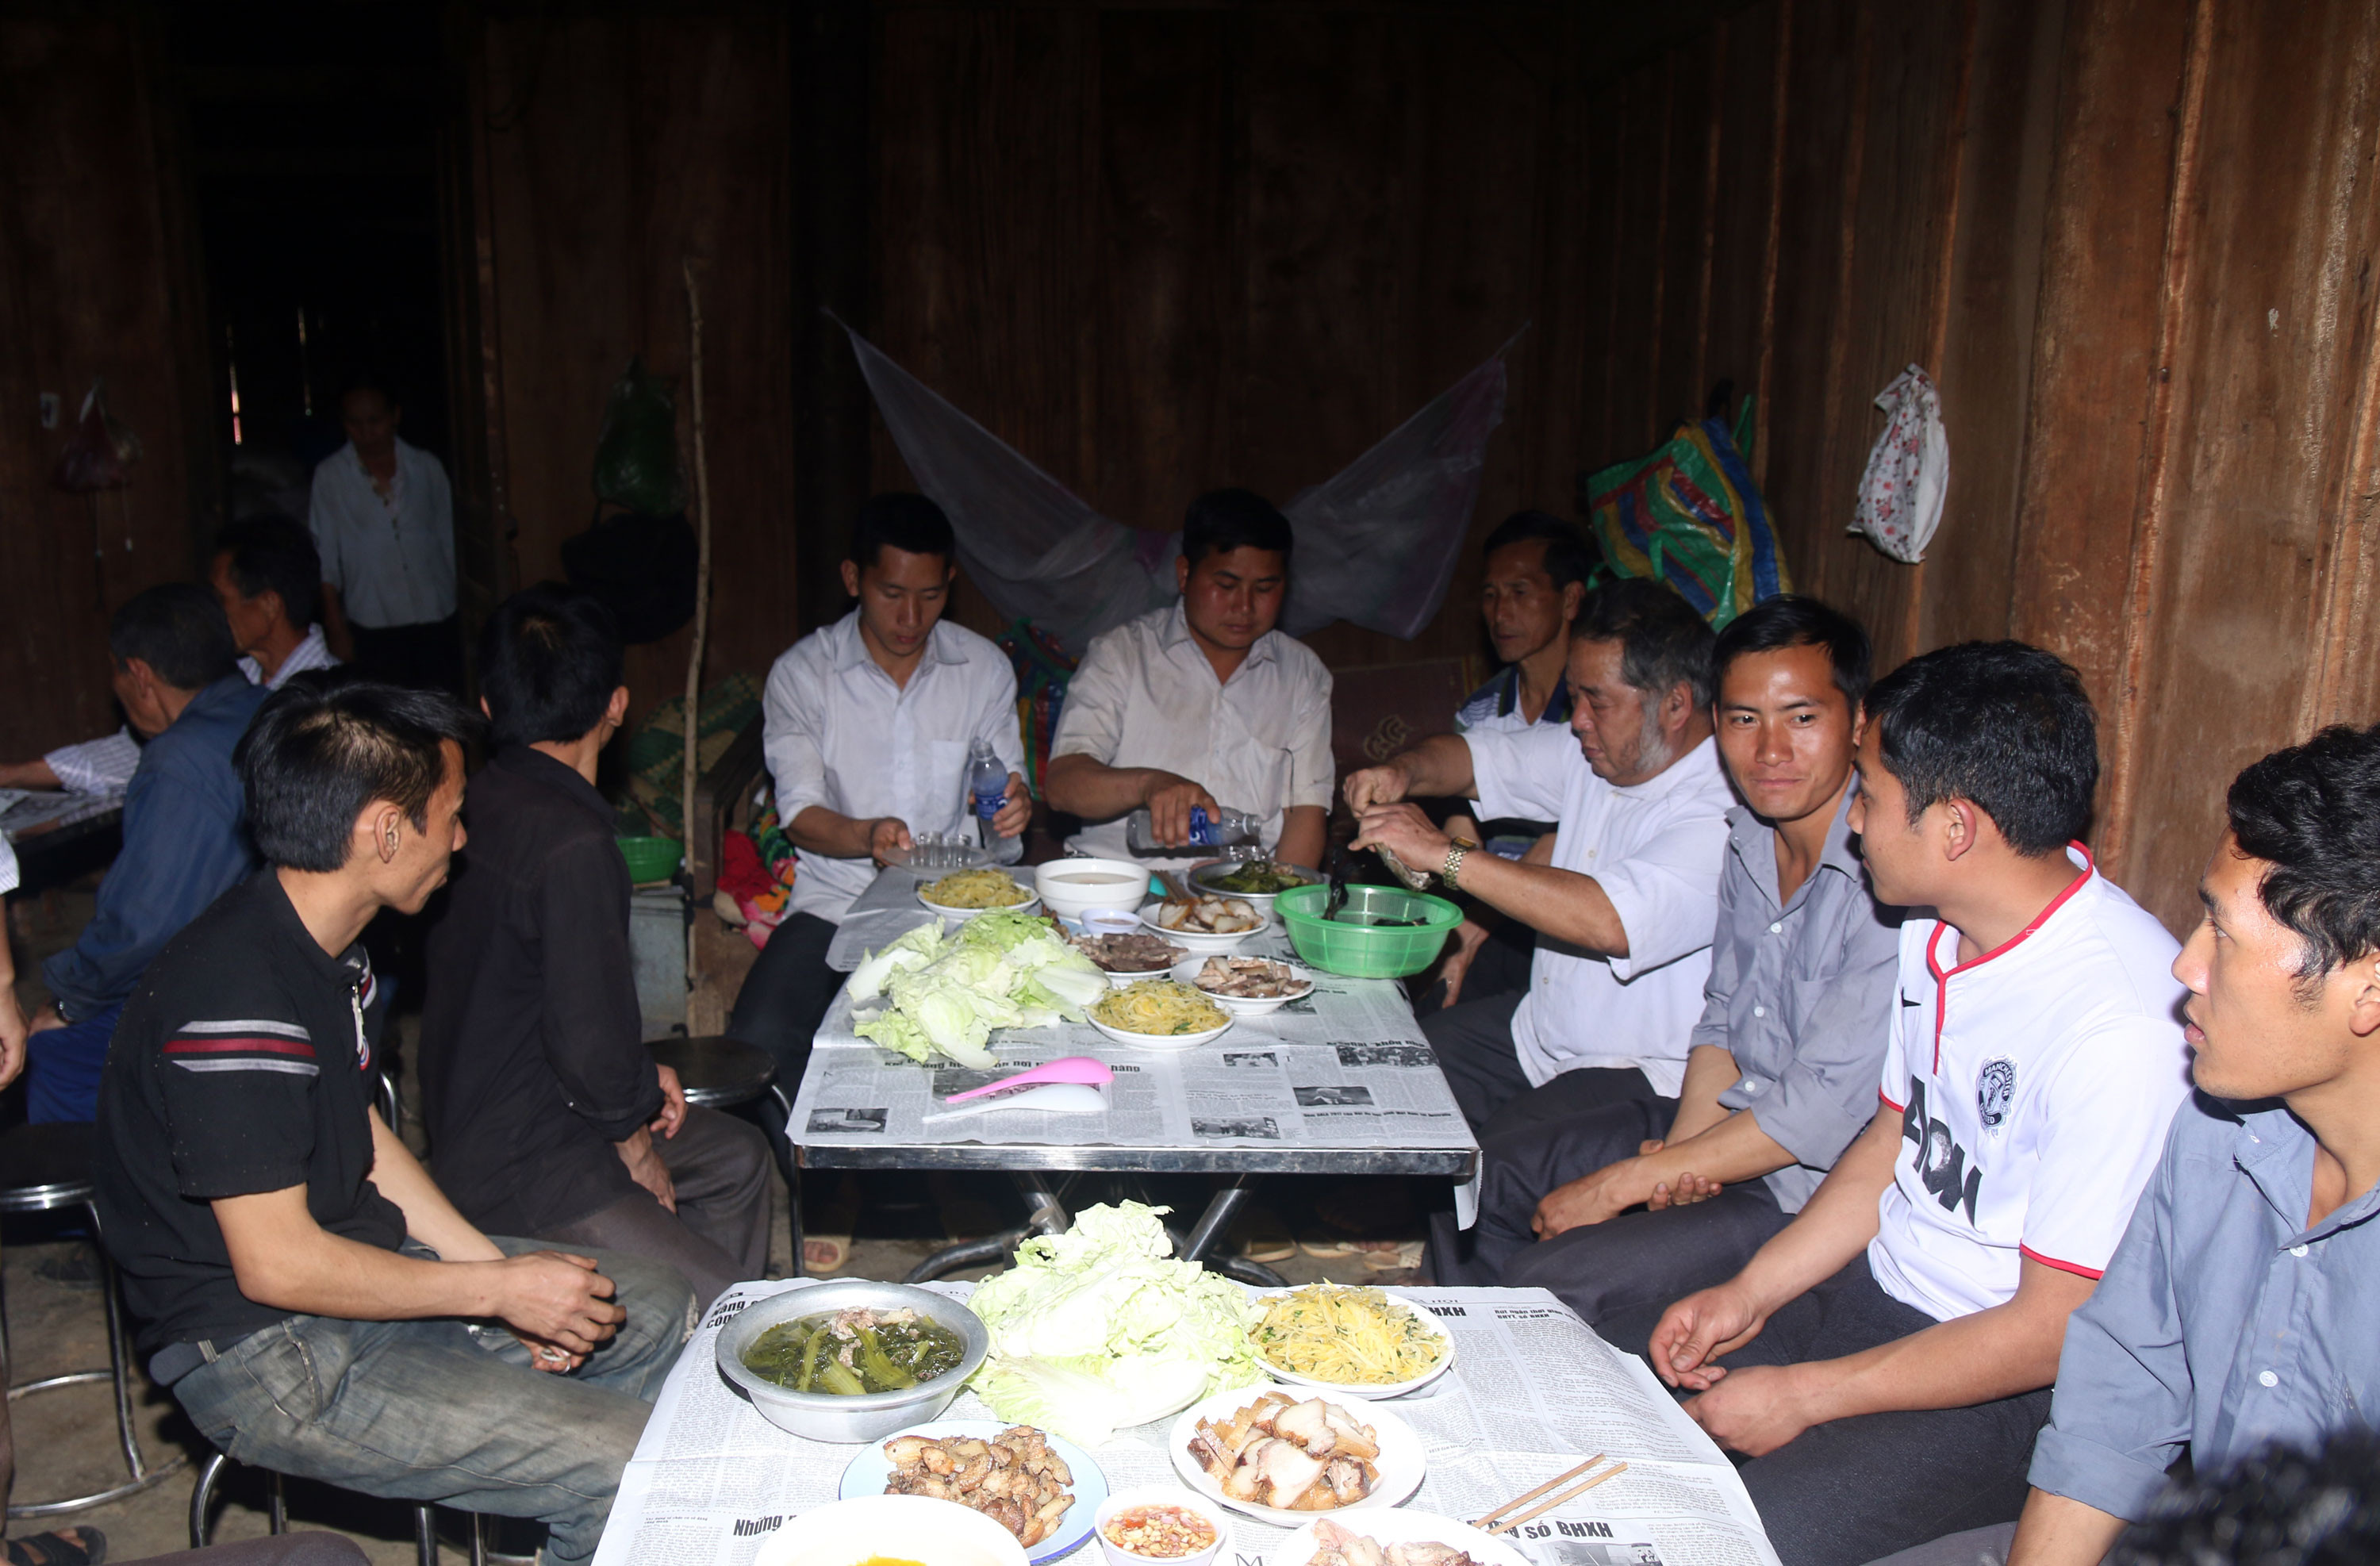 Ngày Tết cổ truyền là ngày hội lớn của cộng đồng người Mông ở Nghệ An, đây là dịp để mọi người ngồi bên chén rượu ngô hàn huyên tâm sự. Ảnh: Đào Thọ